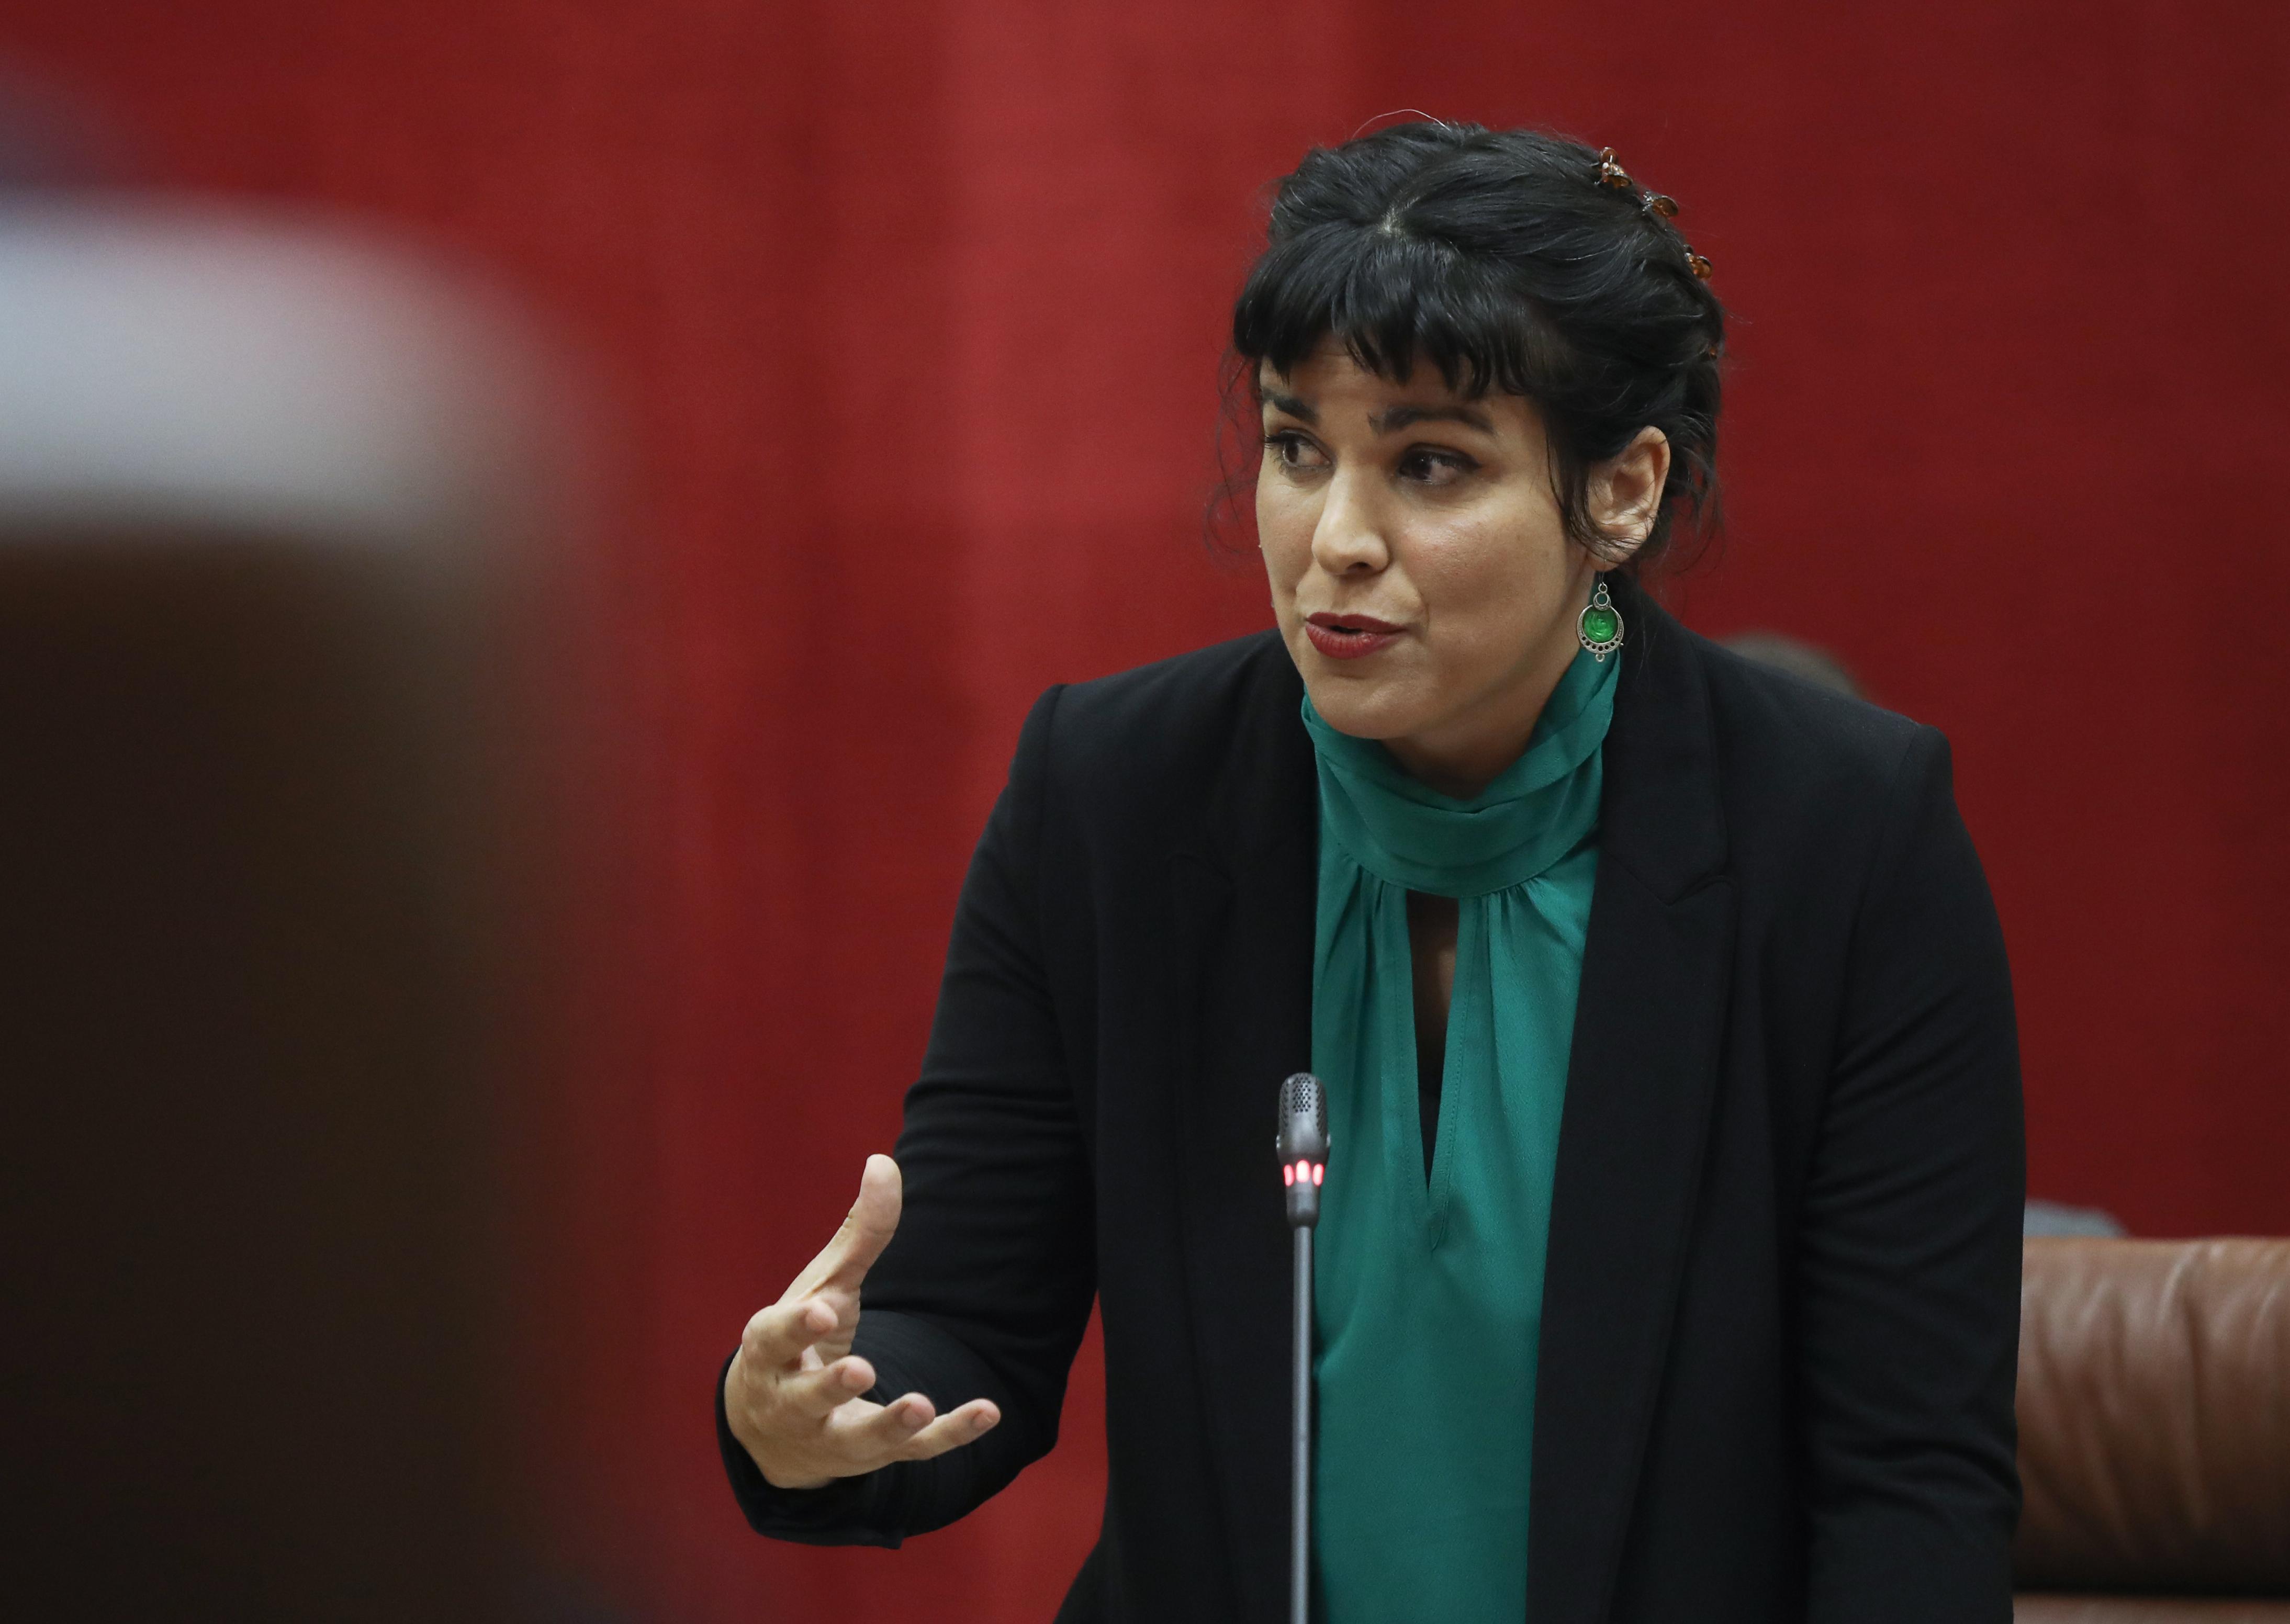 La lider del grupo parlamentario Adelante Andalucía Teresa Rodríguez. Fuente: Europa Press.